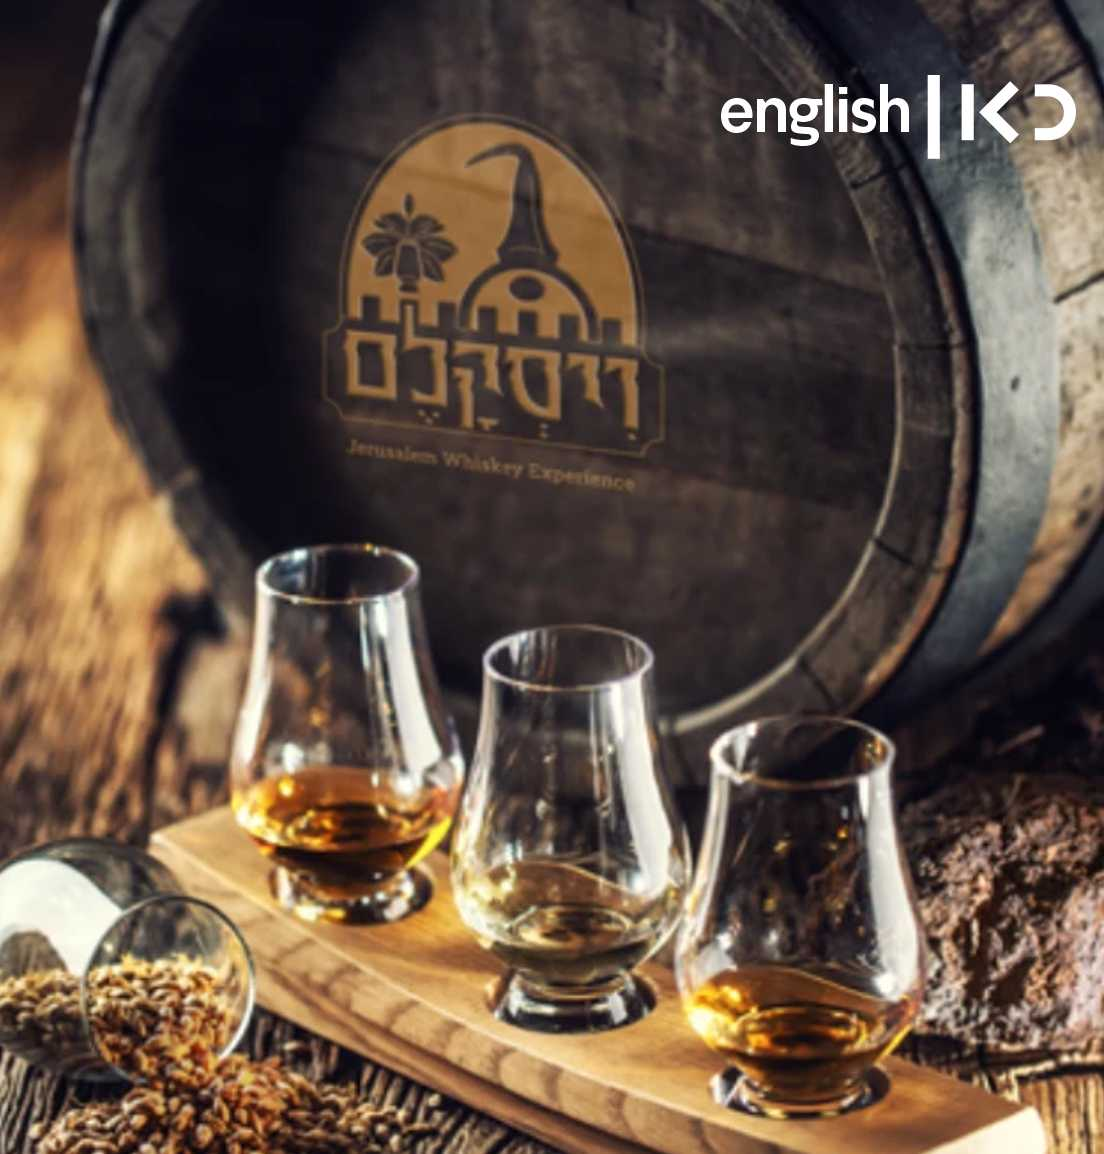 Jerusalem's first whisky festival May 17/18